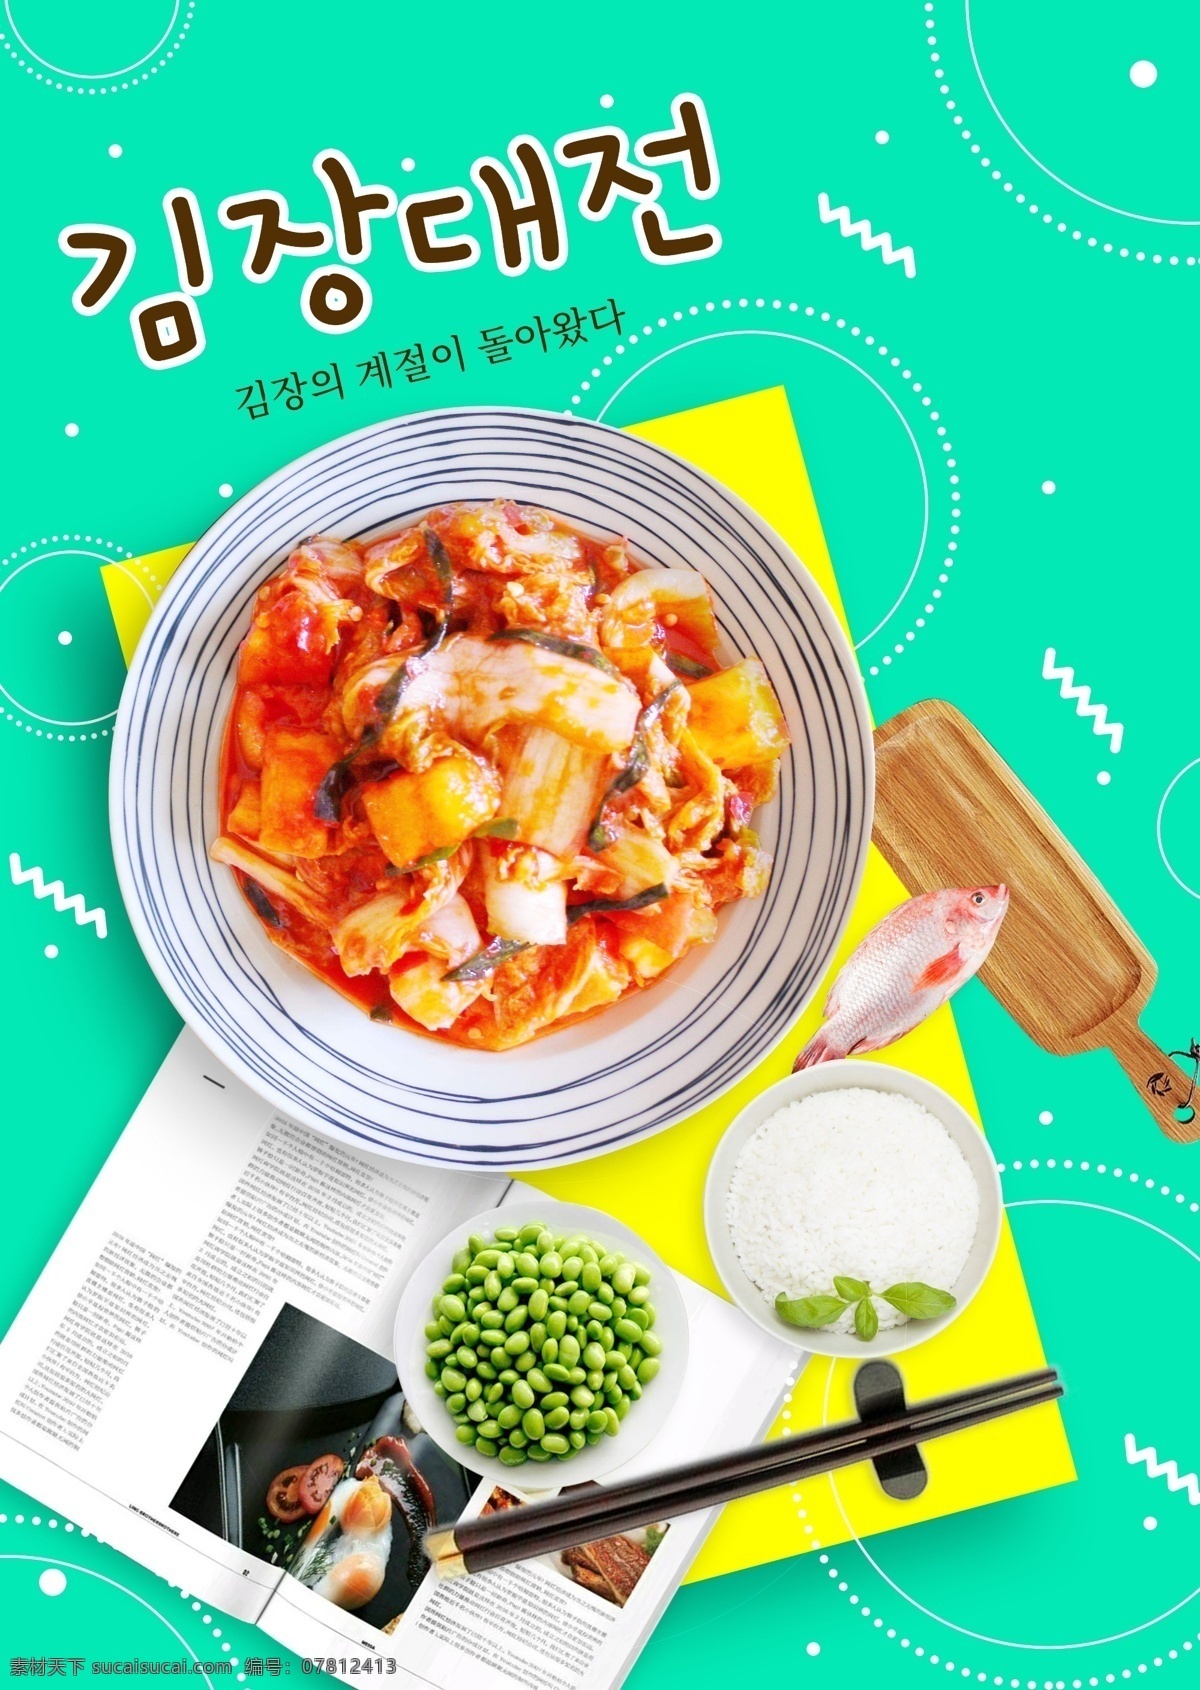 现代 时尚 韩国 泡菜 节日 假日 海报 现代风 朝鲜的 泡菜节 节 勺 盘子 容器 颜色 大蒜 团圆 白色 绿色 底部